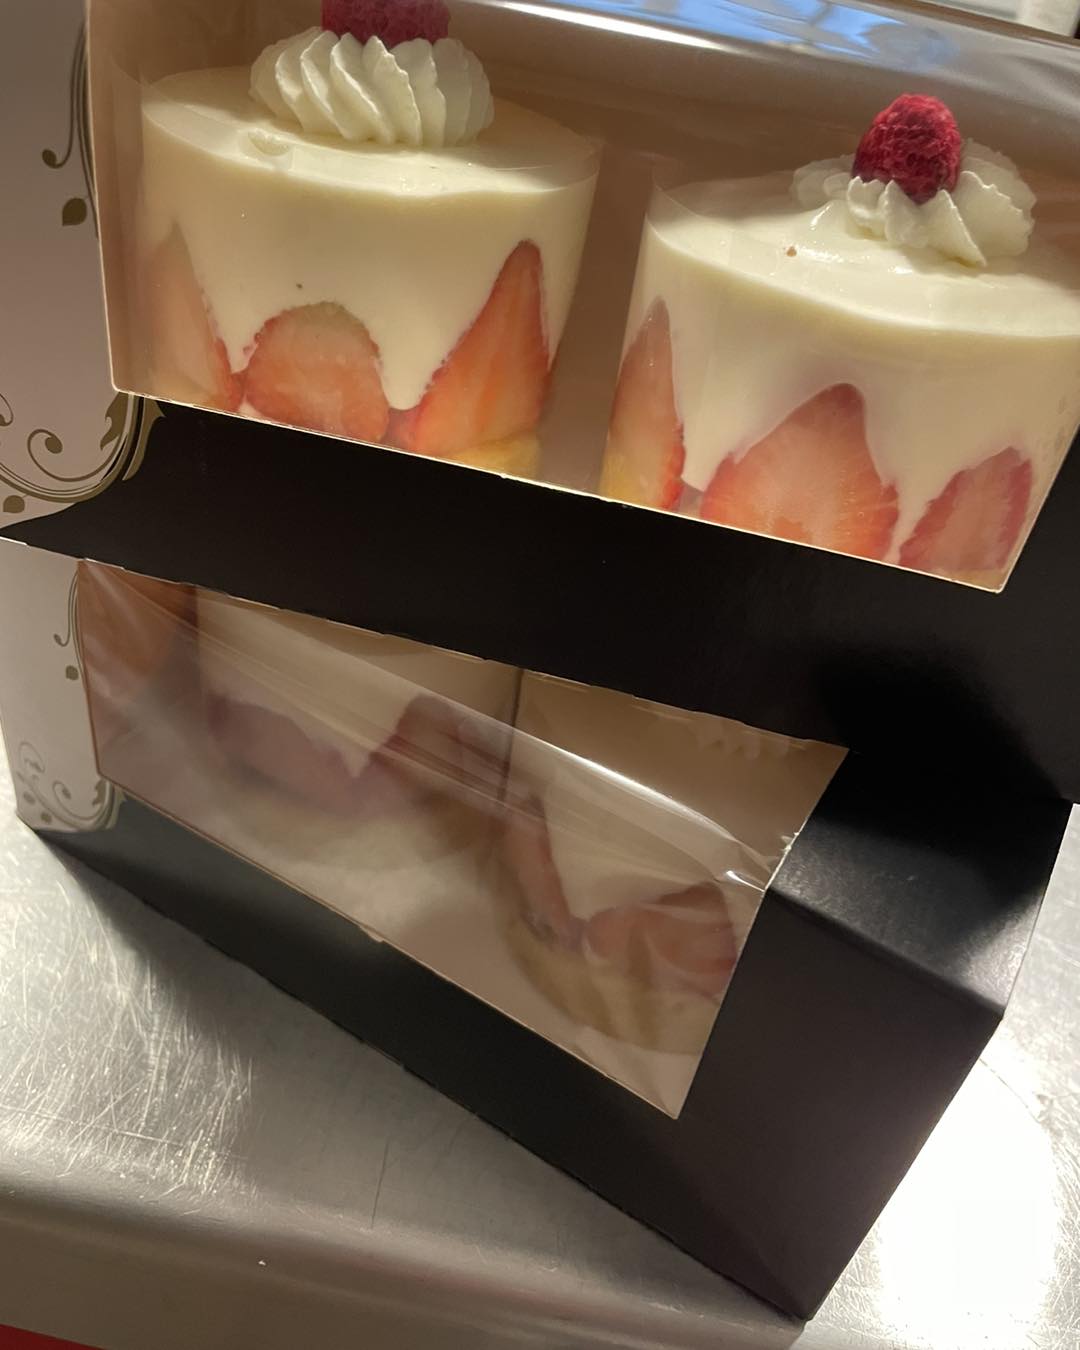 Süße Erdbeer Törtchen – Desserts frisch aus der Kärntner Backstube